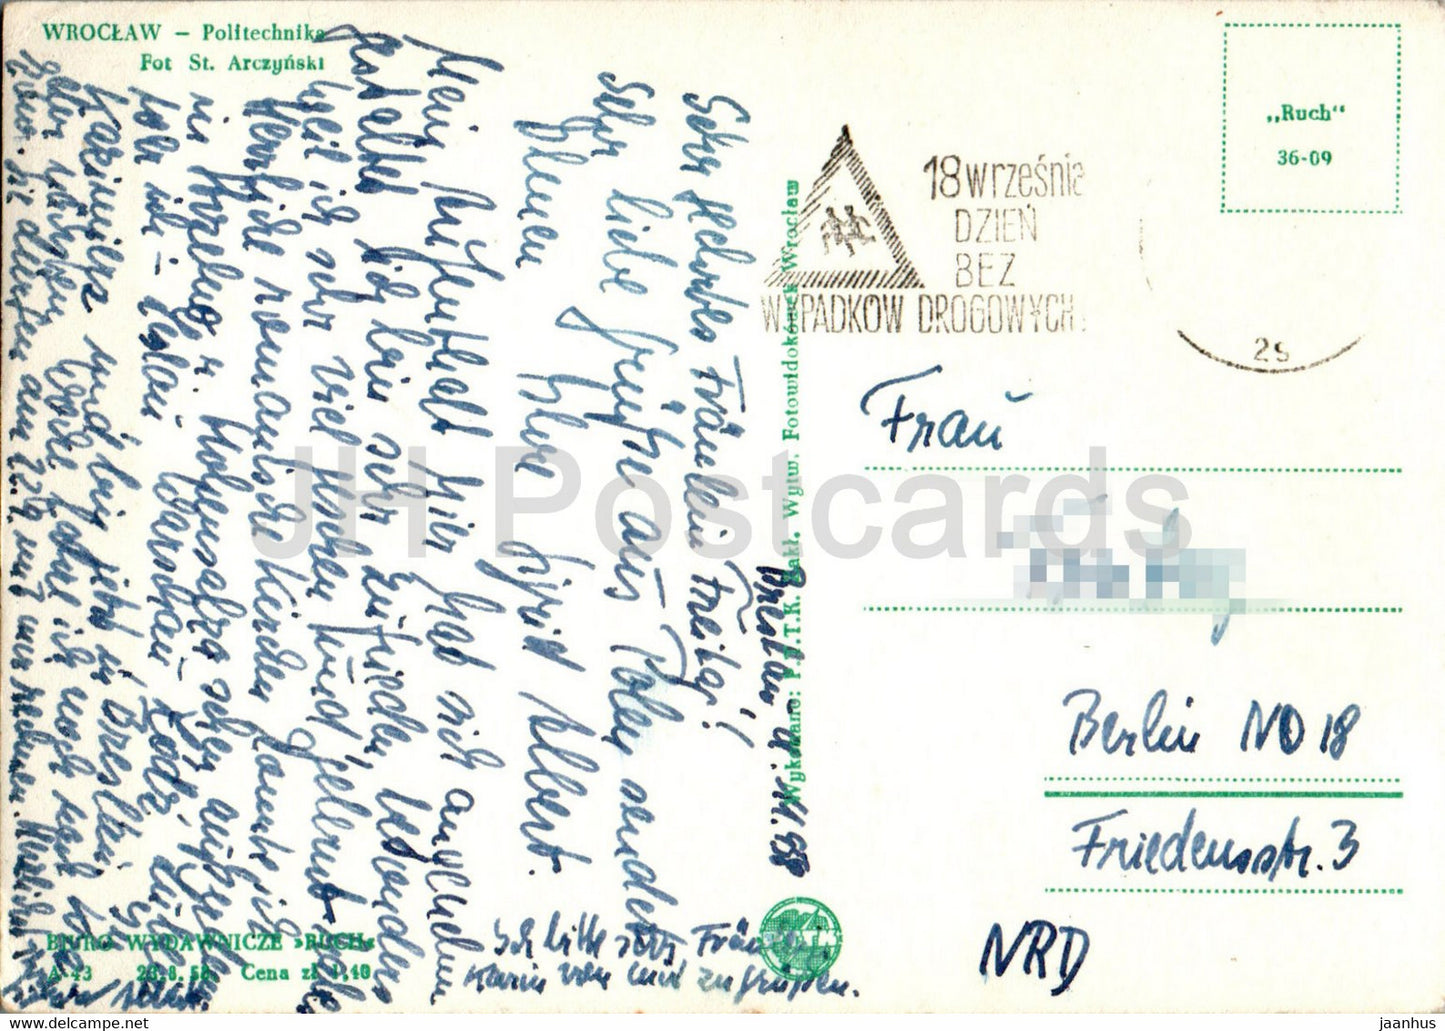 Wroclaw - Politechnika - Ecole Polytechnique - carte postale ancienne - 1958 - Pologne - utilisé